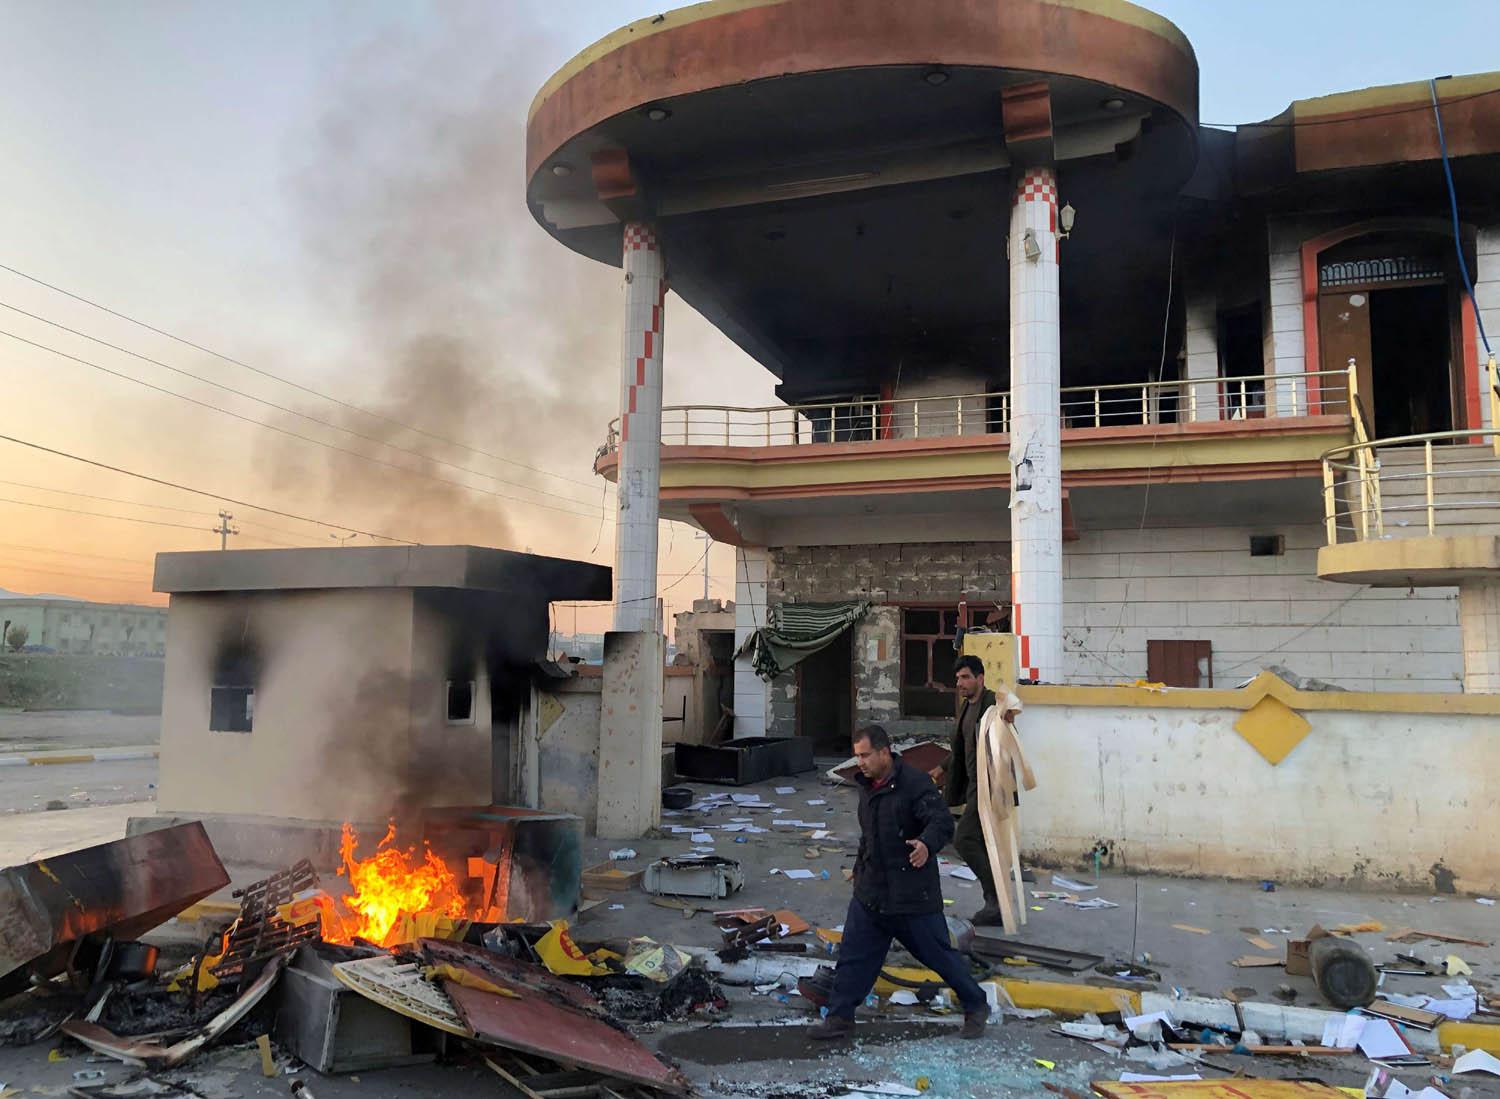 مقر للحزب الديمقراطي الكردستاني تعرض للحرق في السليمانية من قبل المحتجين